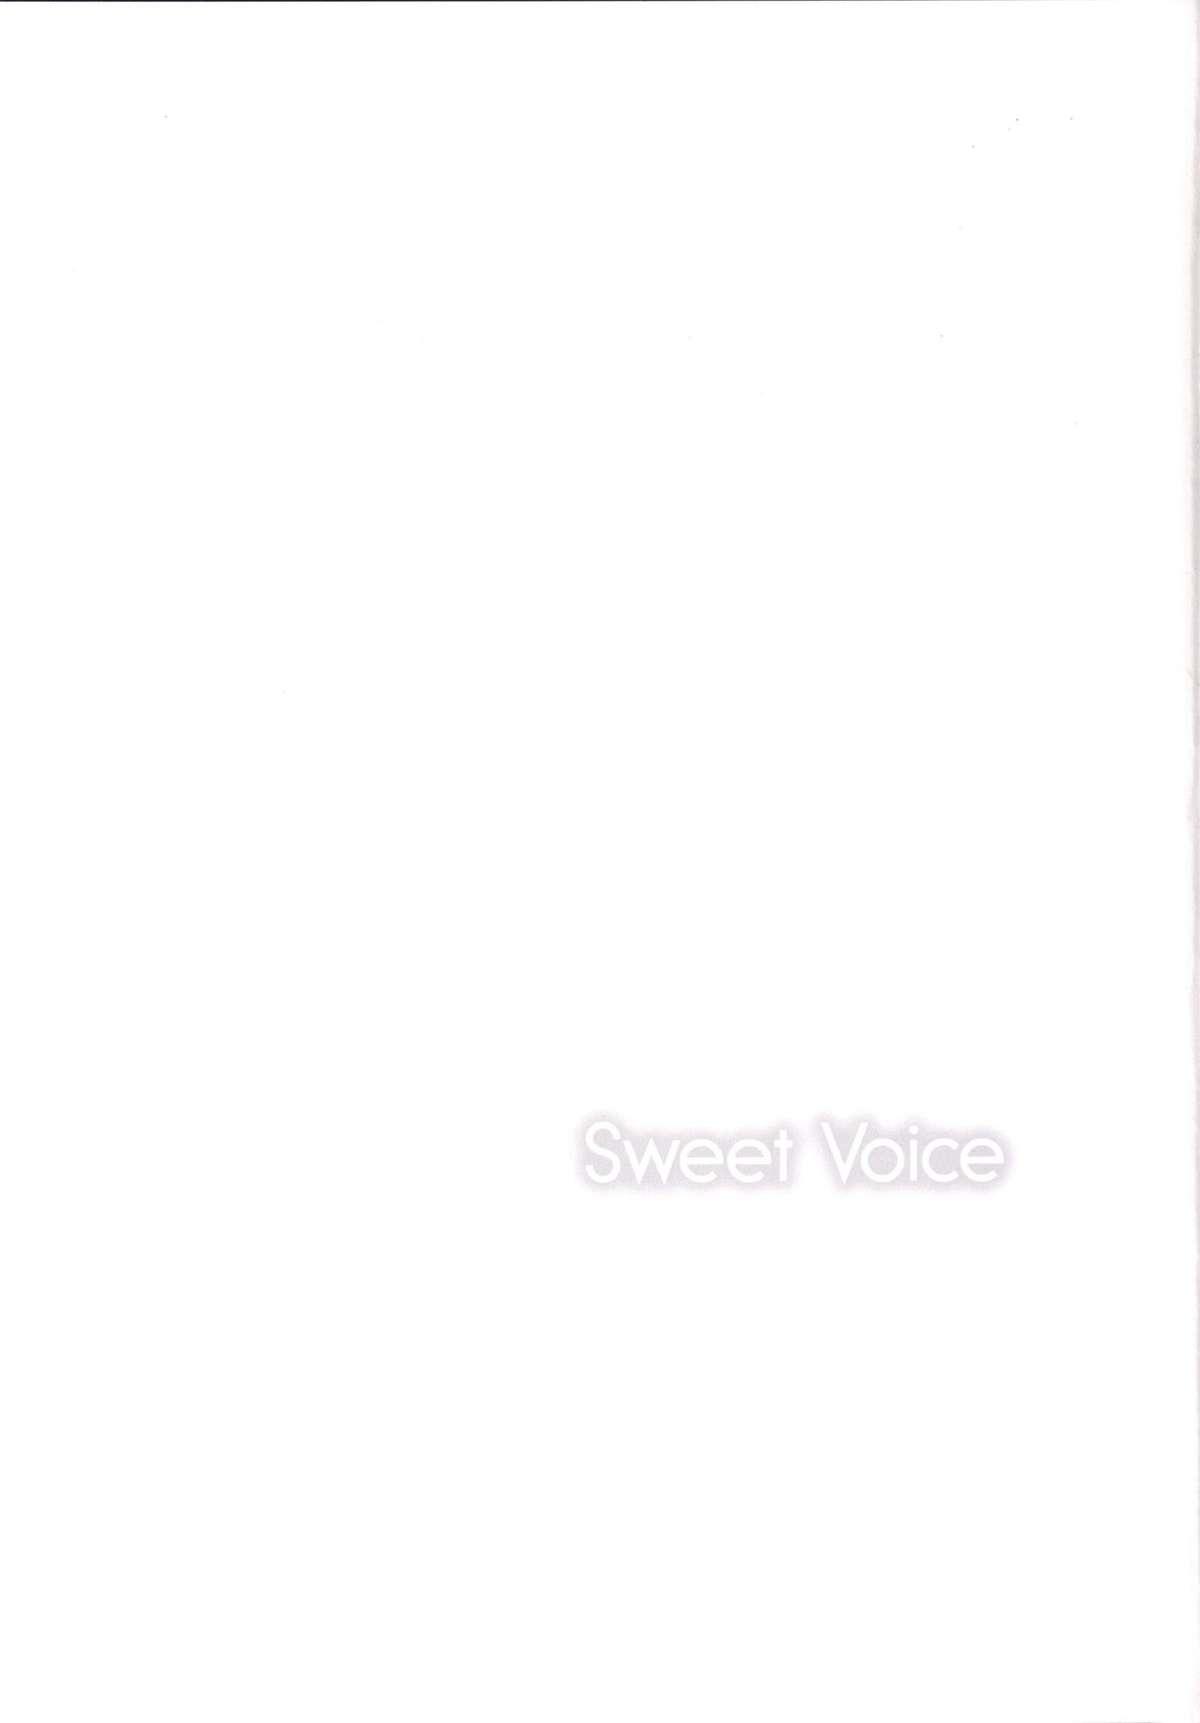 Sweet Voice 16